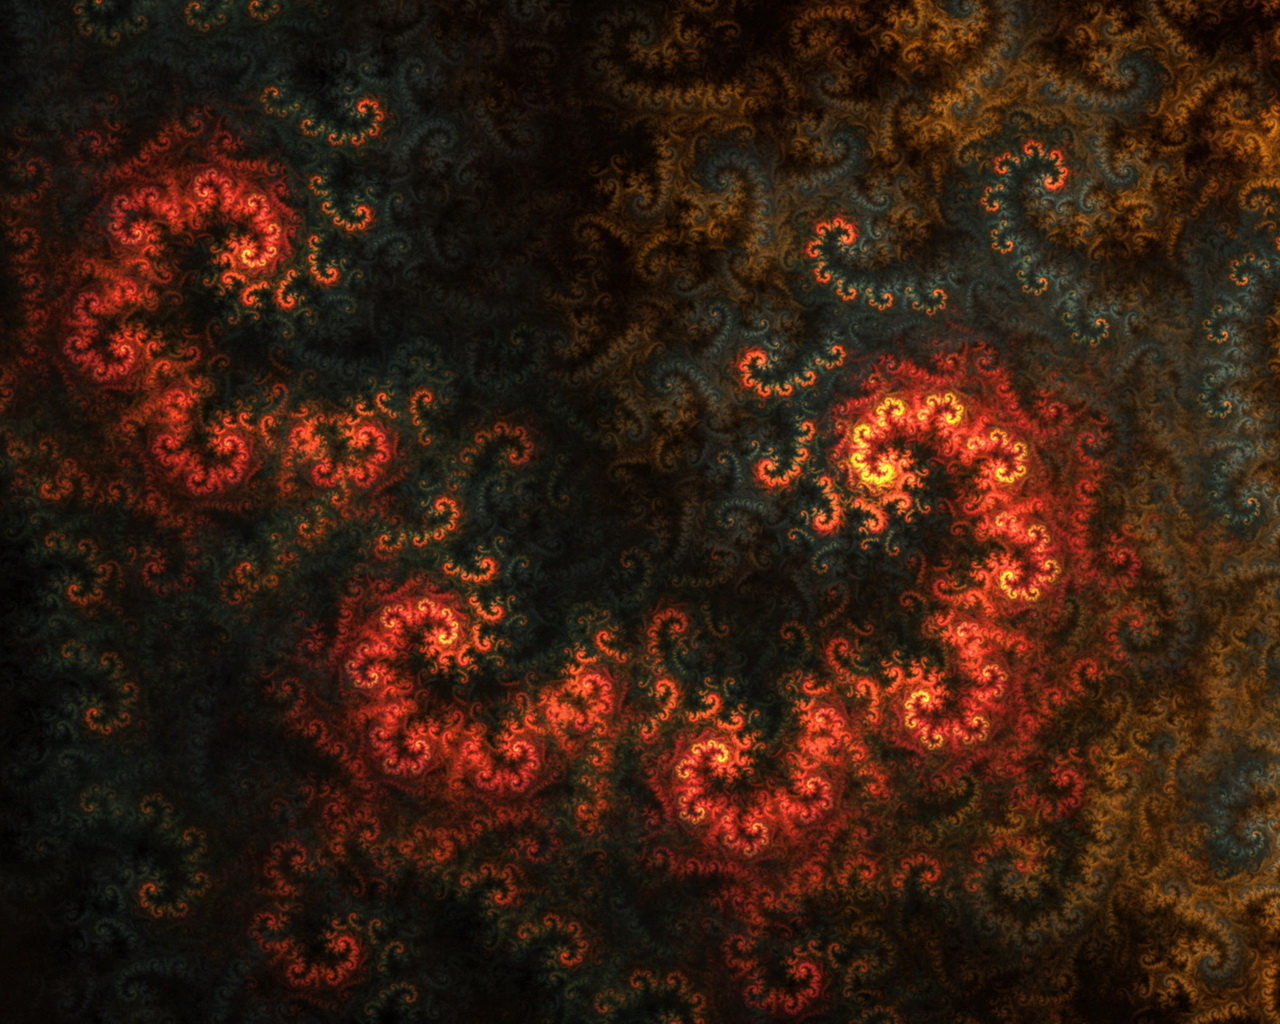 fiery fractals